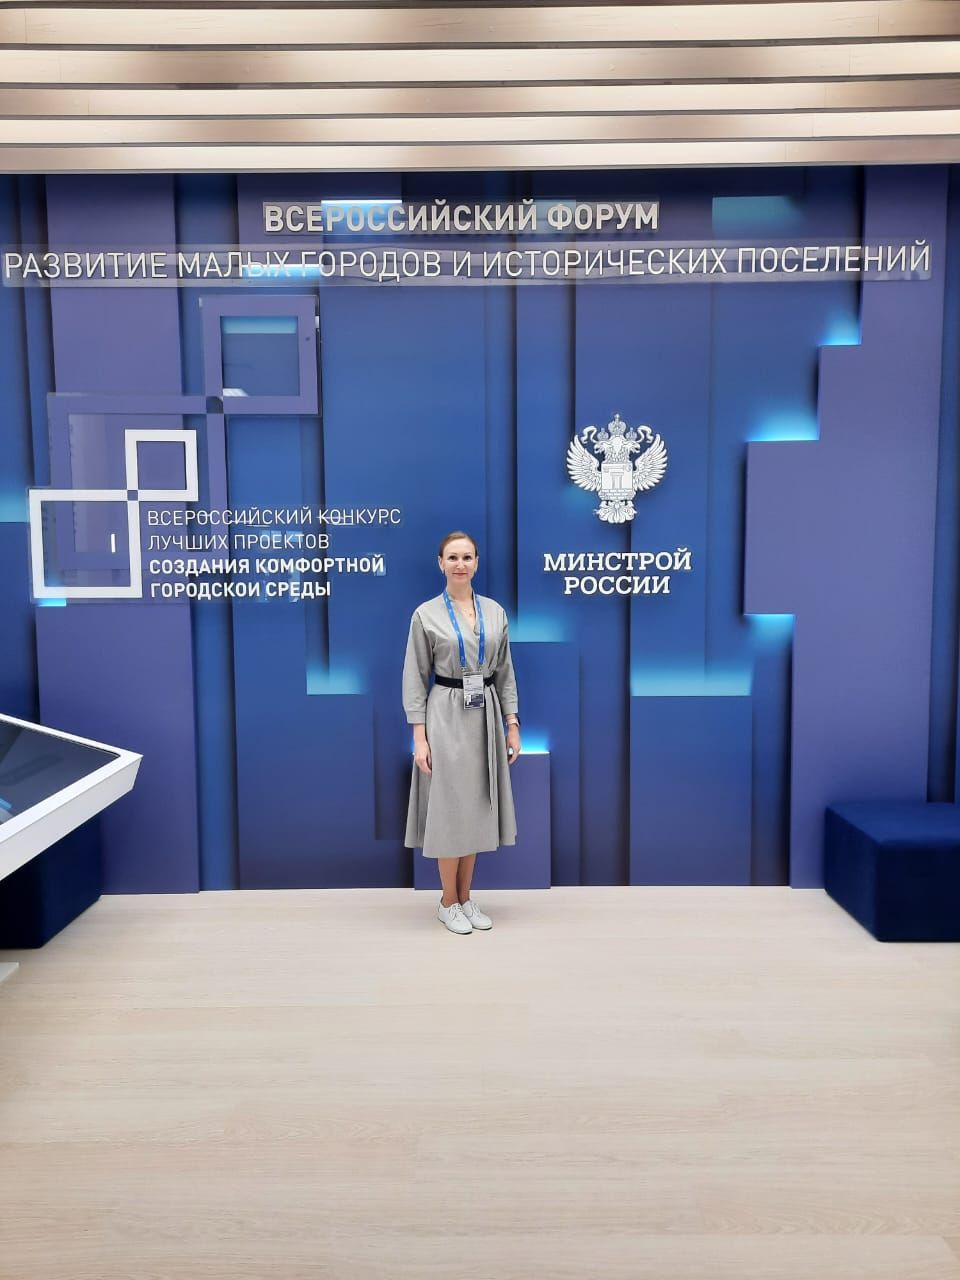 Нурлатцы участвуют во Всероссийском форуме во Владивостоке